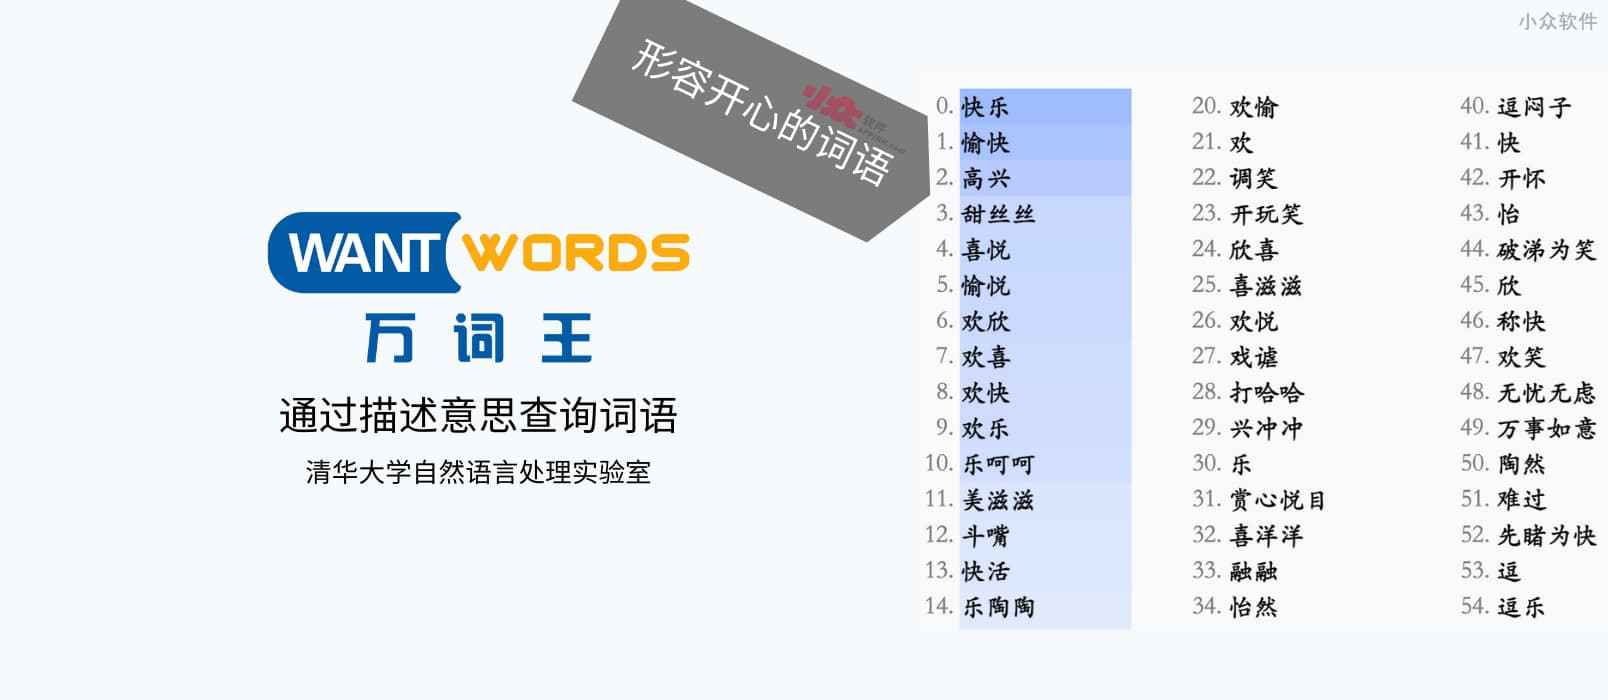 万词王 - 清华大学发布开源在线反向词典，通过描述意思来查询 100 个近义词